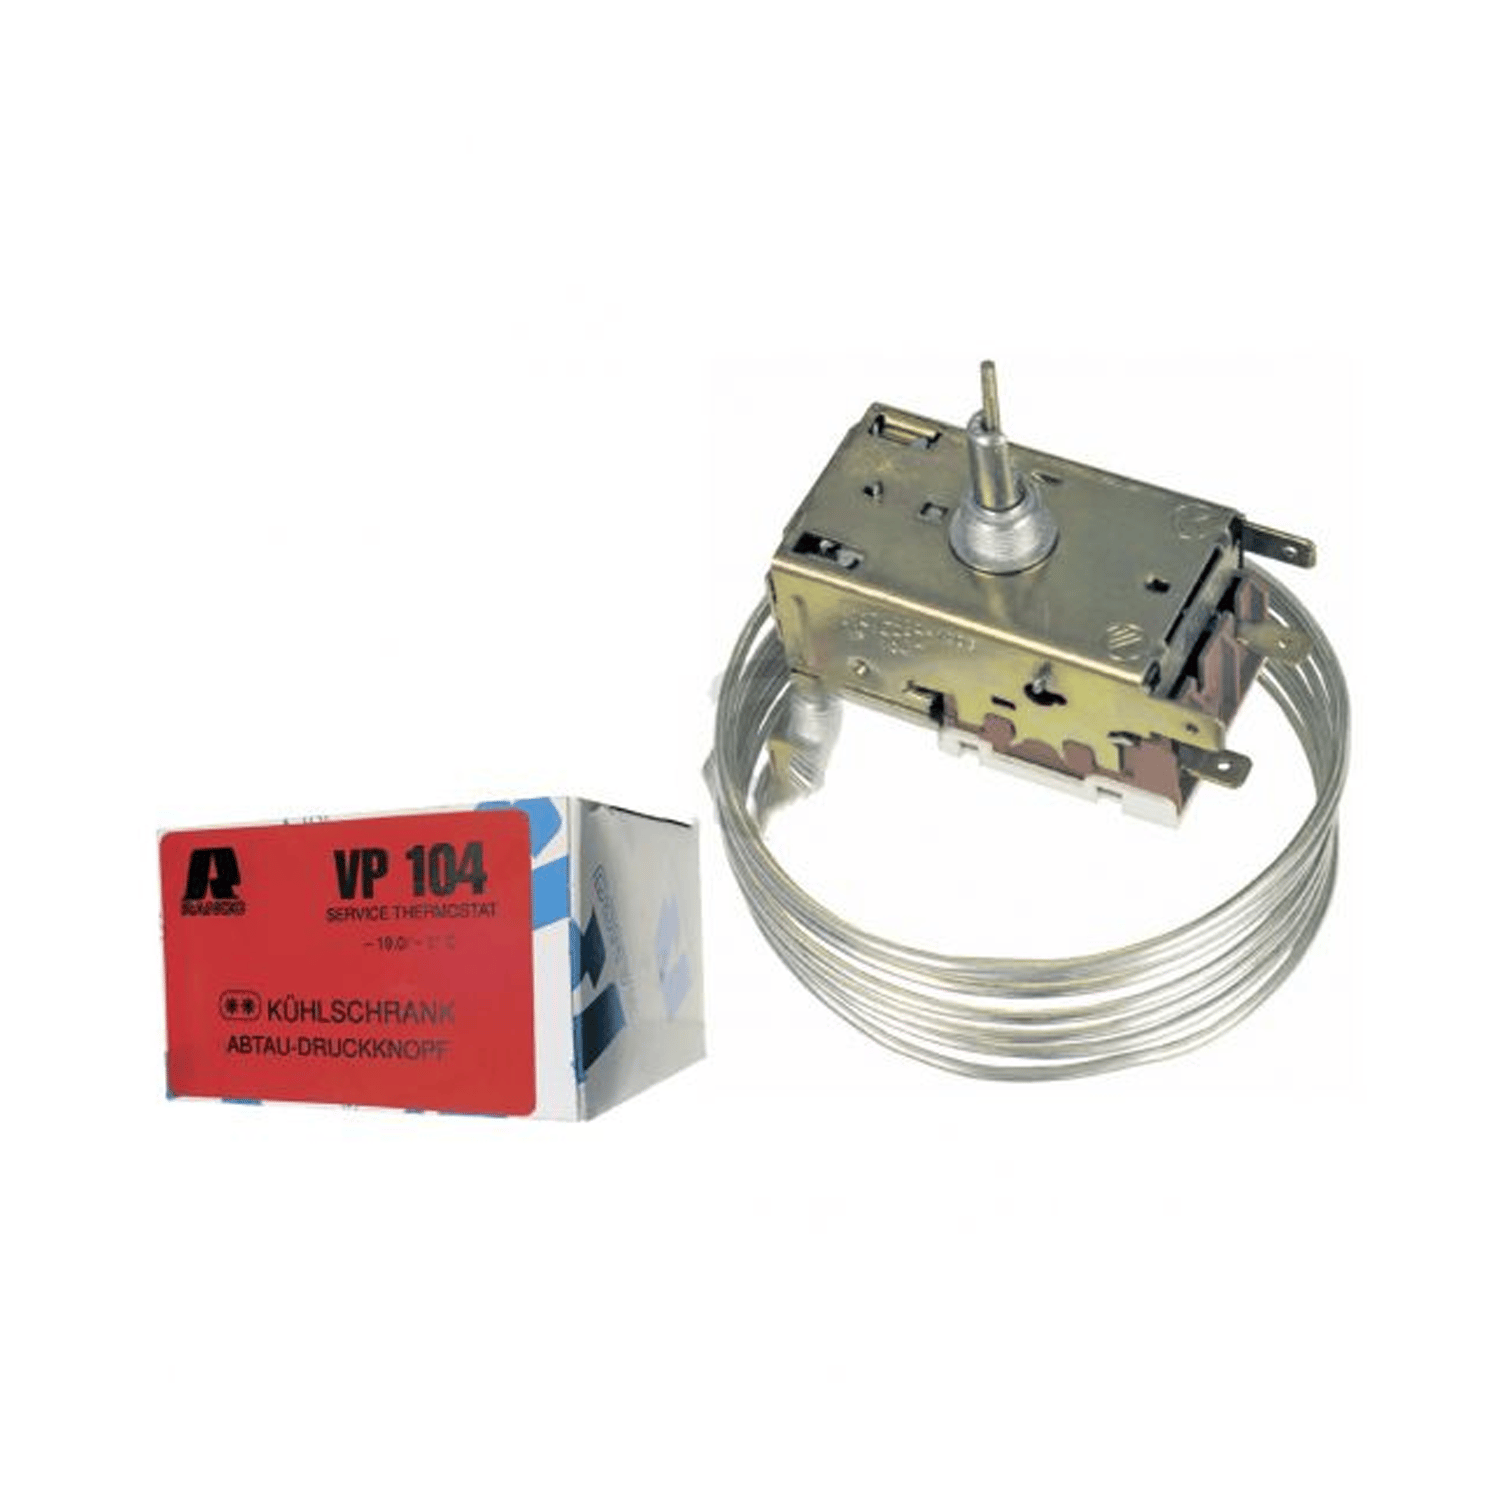 Servicethermostat Ranco VP104 K60-L2024 für Kühlschrank ROBERTSHAW min -9 °C, max -19 °C, schaltwert -11 °C, L 1600 mm, 6,3mm AMP